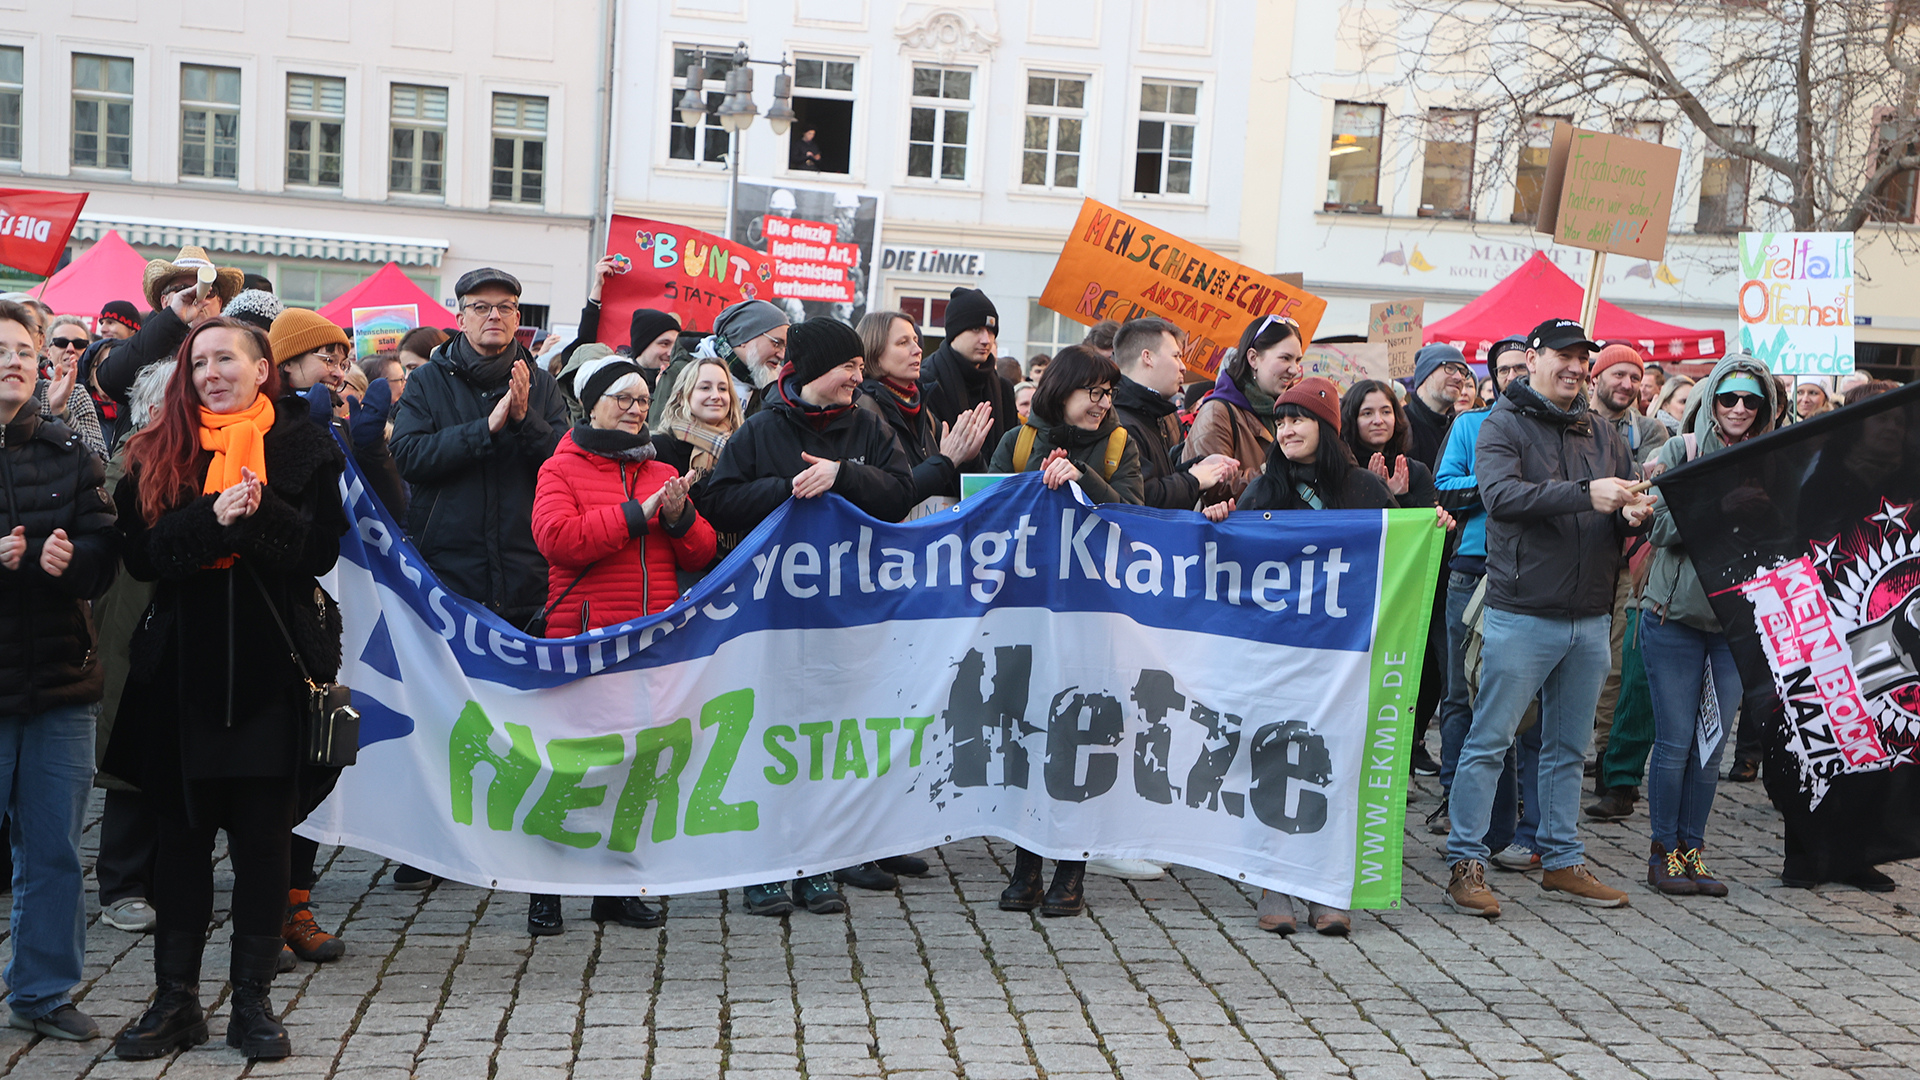 Teilnehmer einer Demonstration gegen eine Veranstaltung von Rechtsextremen stehen mit einem Transparent "Herz statt Hetze" auf dem Marktplatz in Gera. 